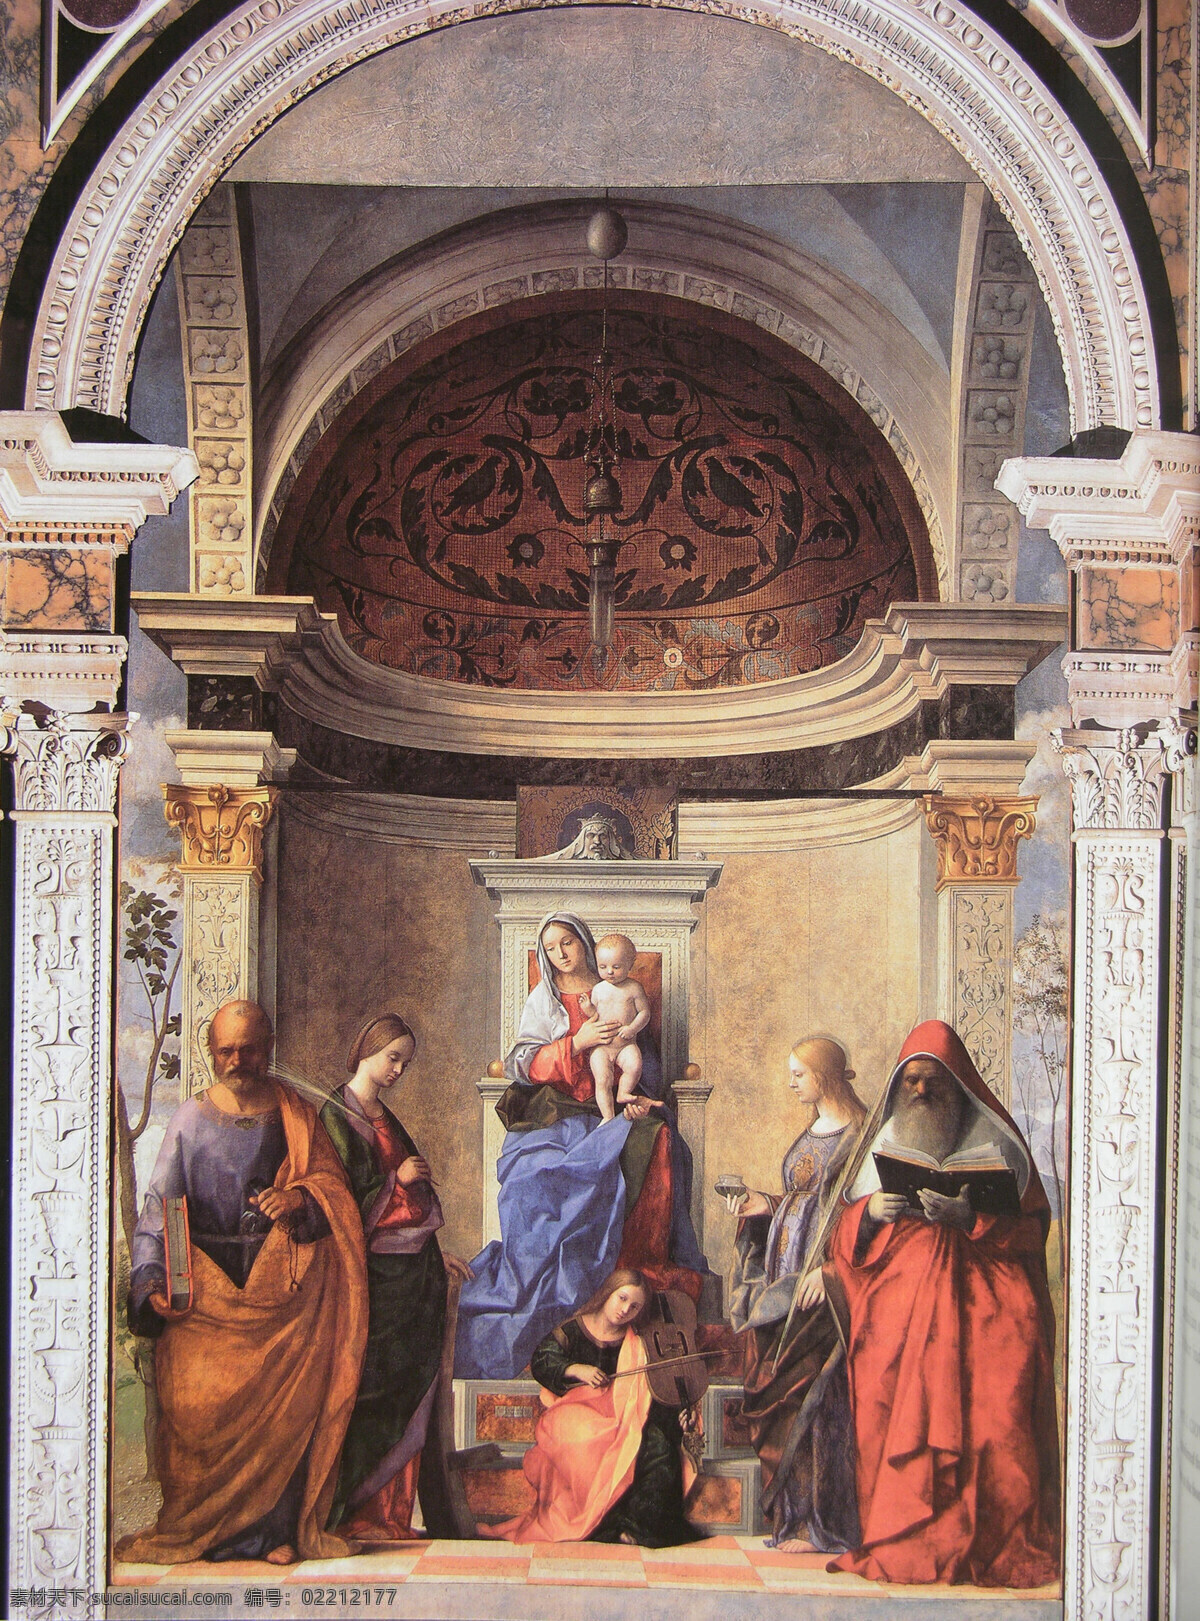 贝里尼 祭坛 画 圣母 意大利 贝里尼祭坛画 文化艺术